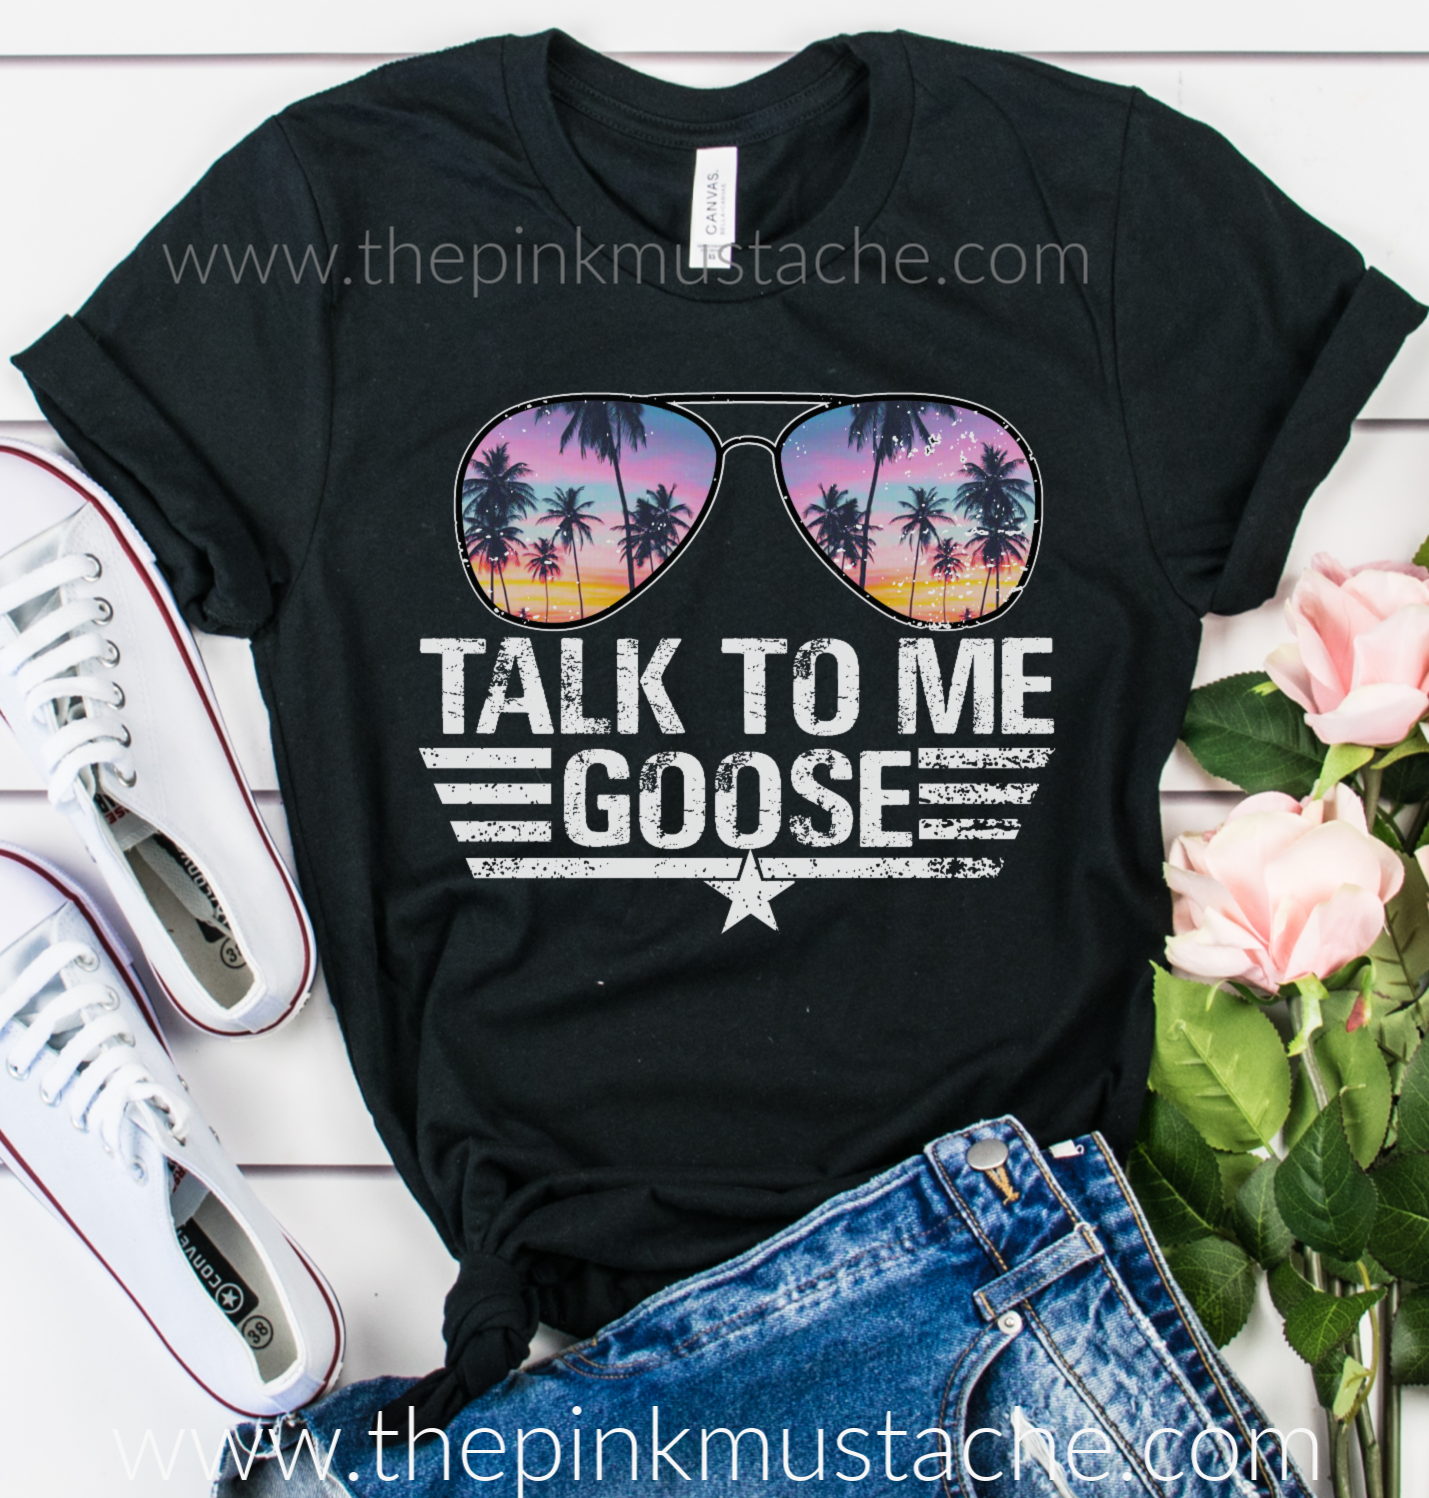 Top Gun Talk to Me Adult S/S T-Shirt